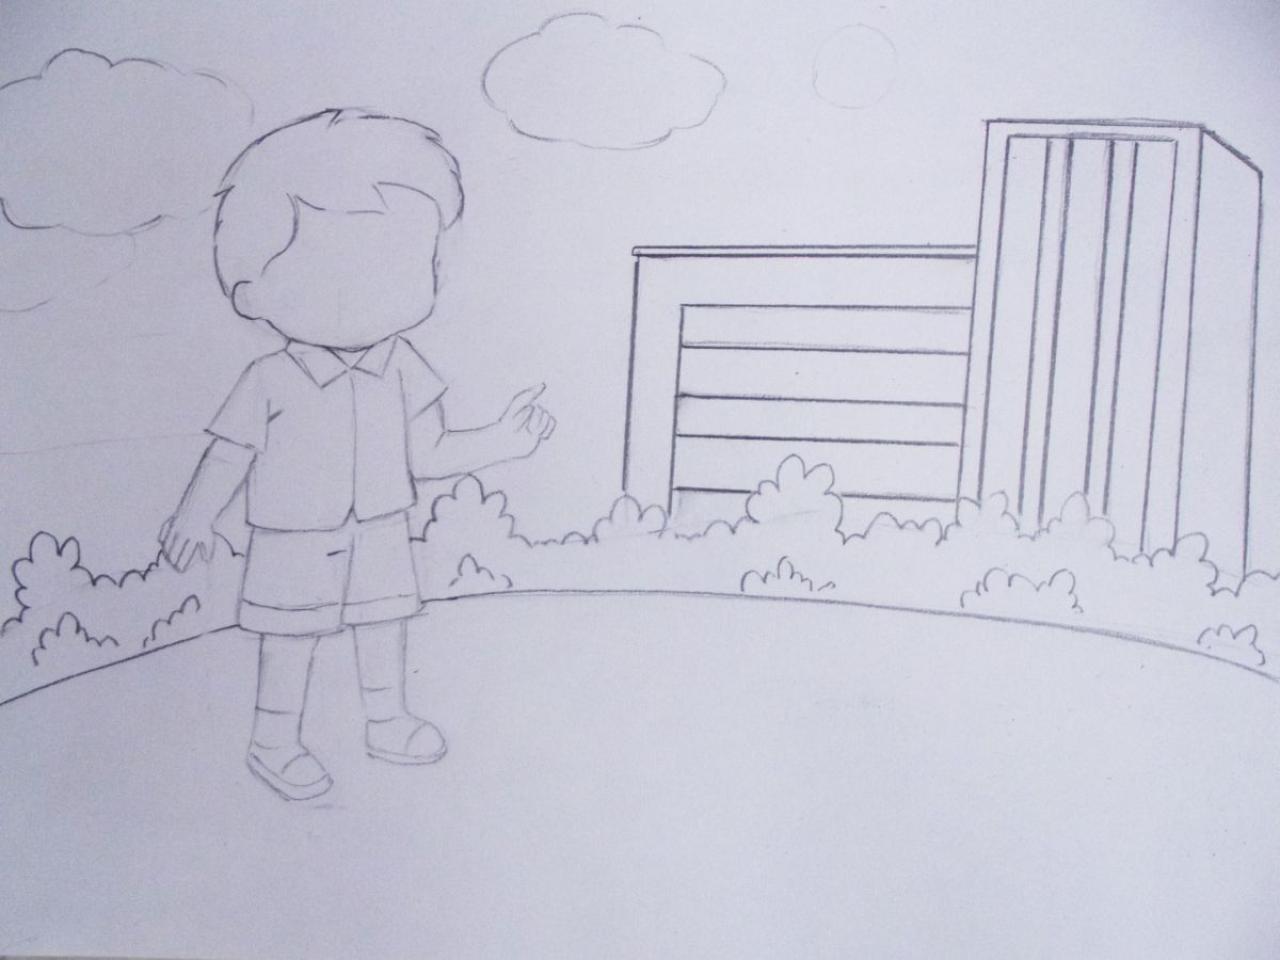 第二步，画出“我”学生各部分比例关系及树林、楼房的结构